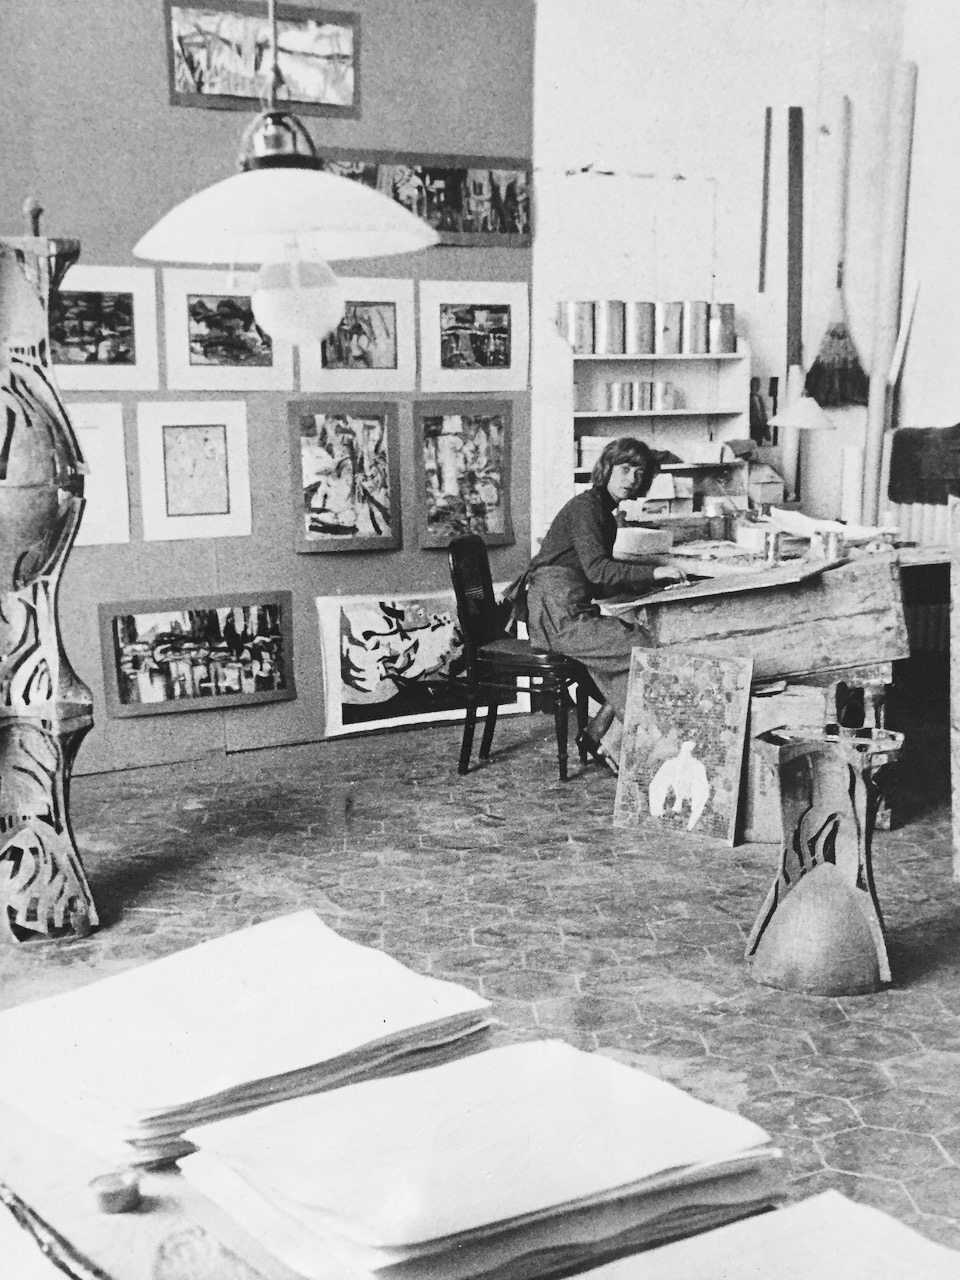 Kreilick in her American Academy of Rome Studio, 1961.